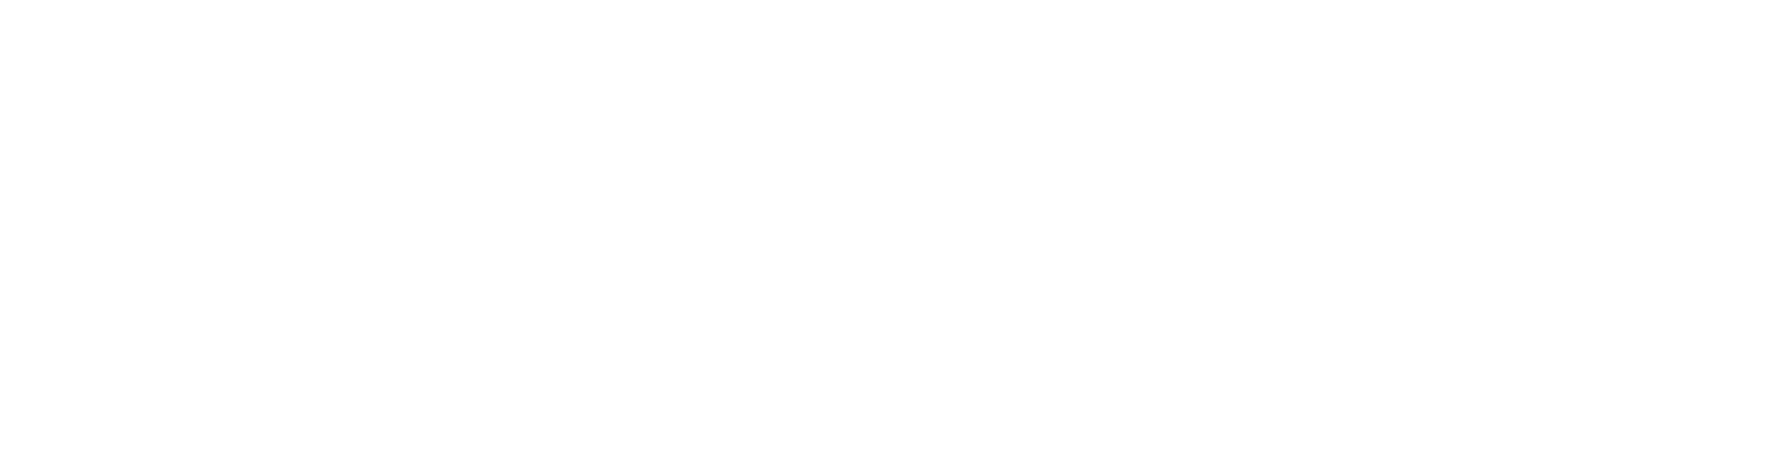 Monytri-03